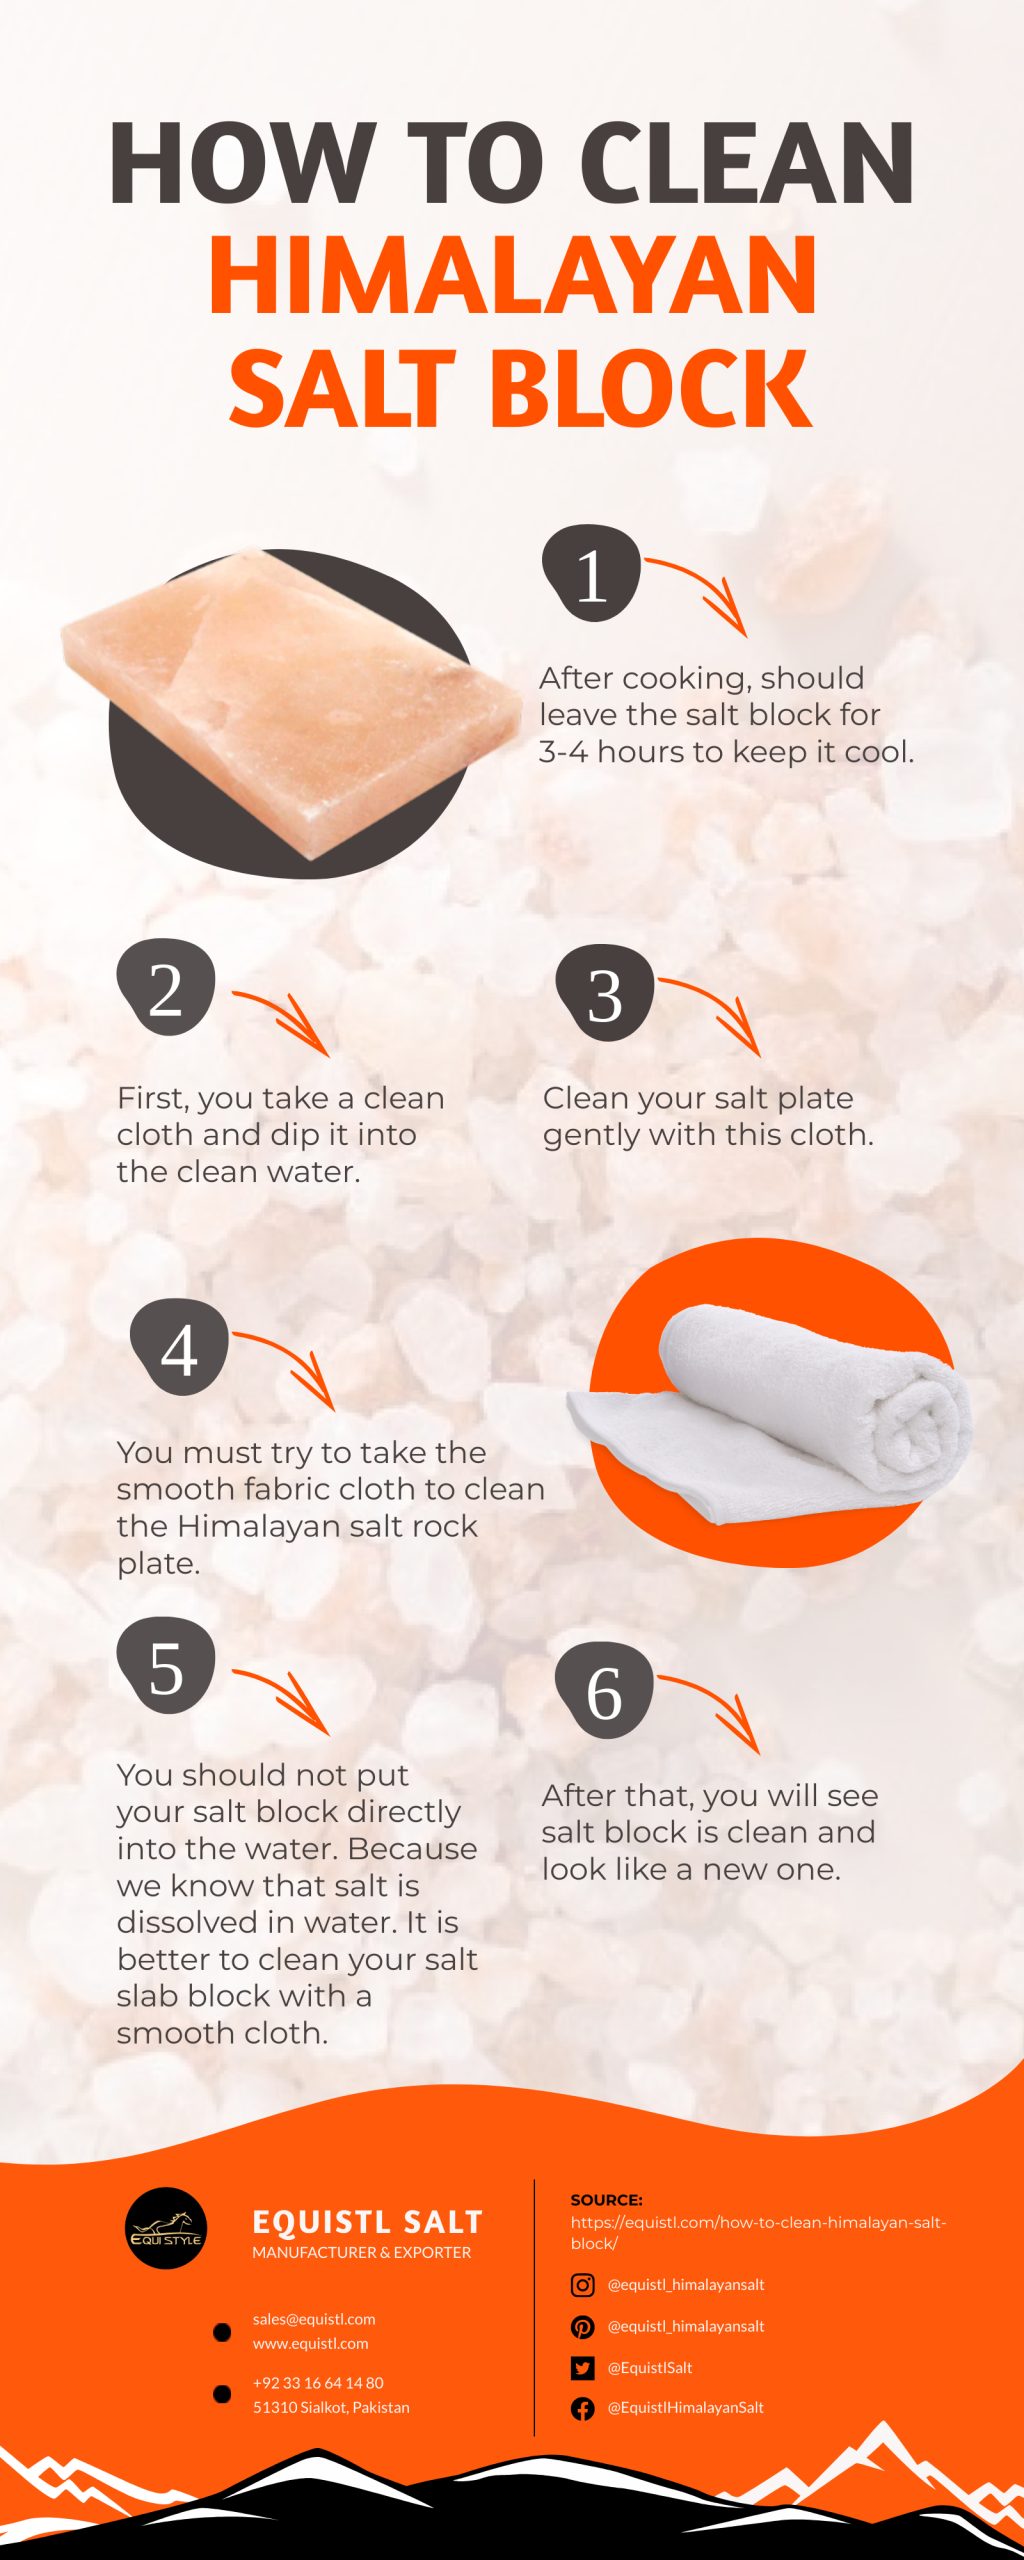 How to Clean a Himalayan Salt Block